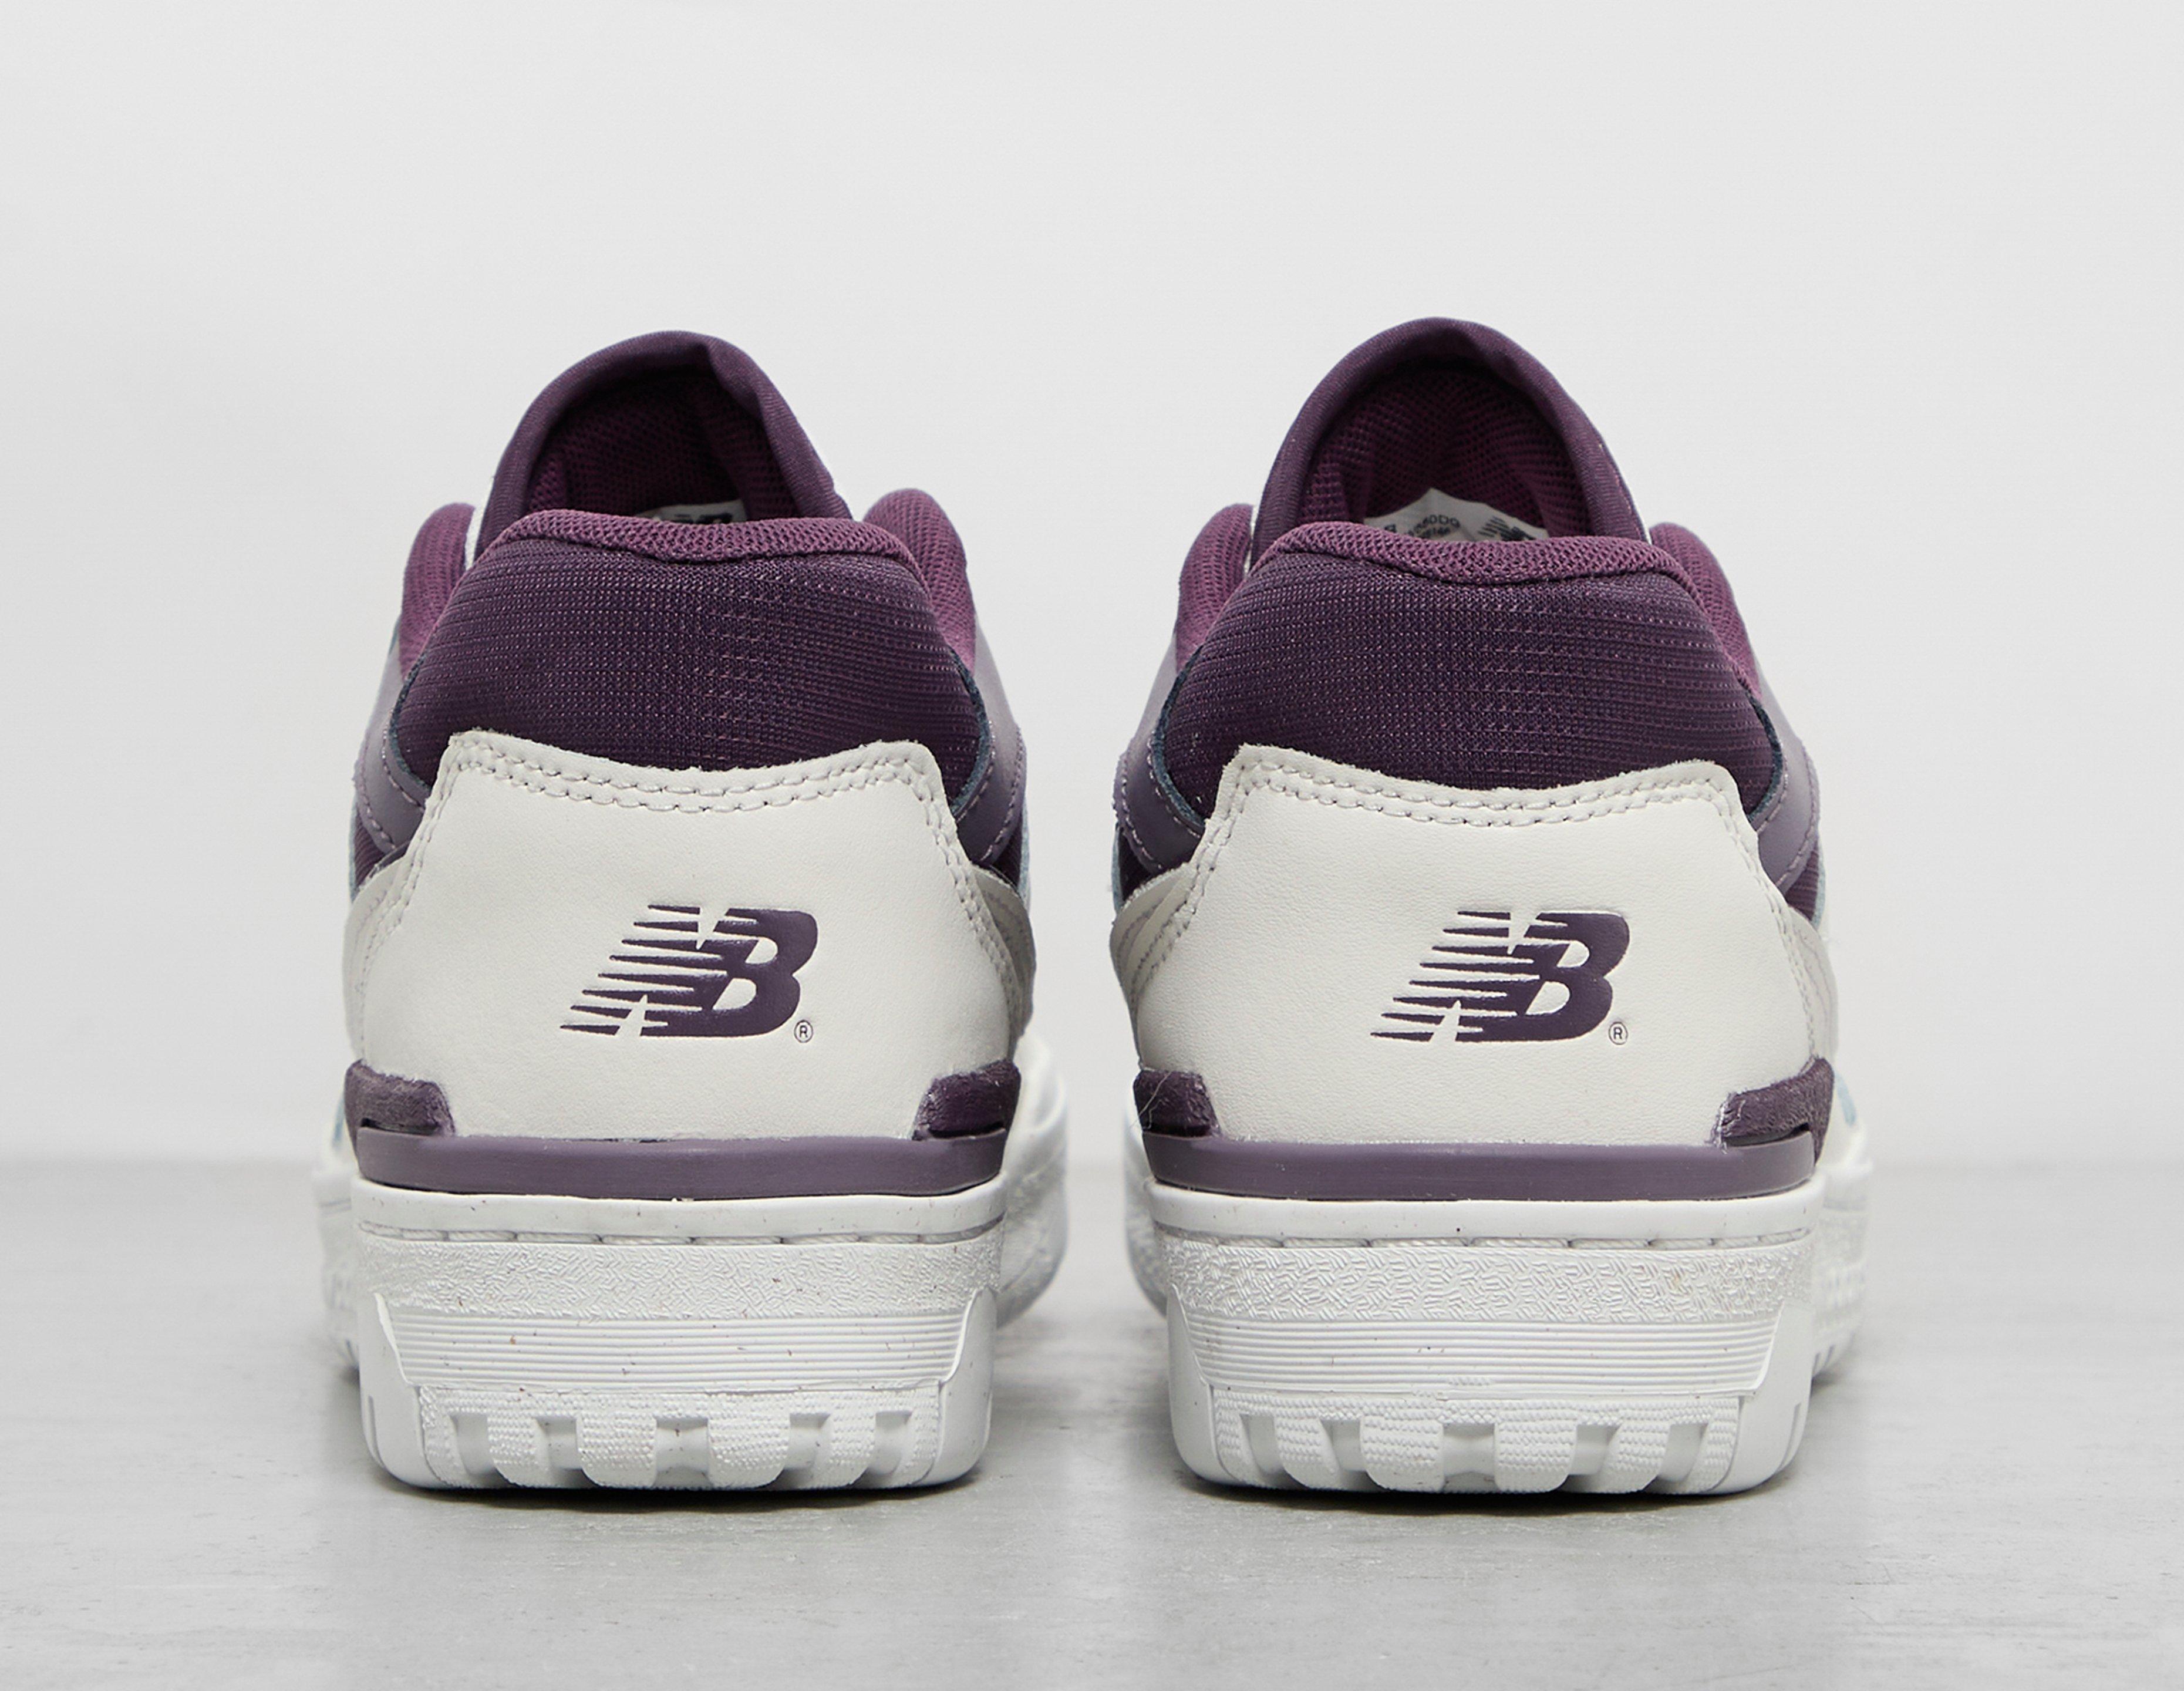 Girls New Balance 535 White/Purple Athletic Shoes Size 11 Used